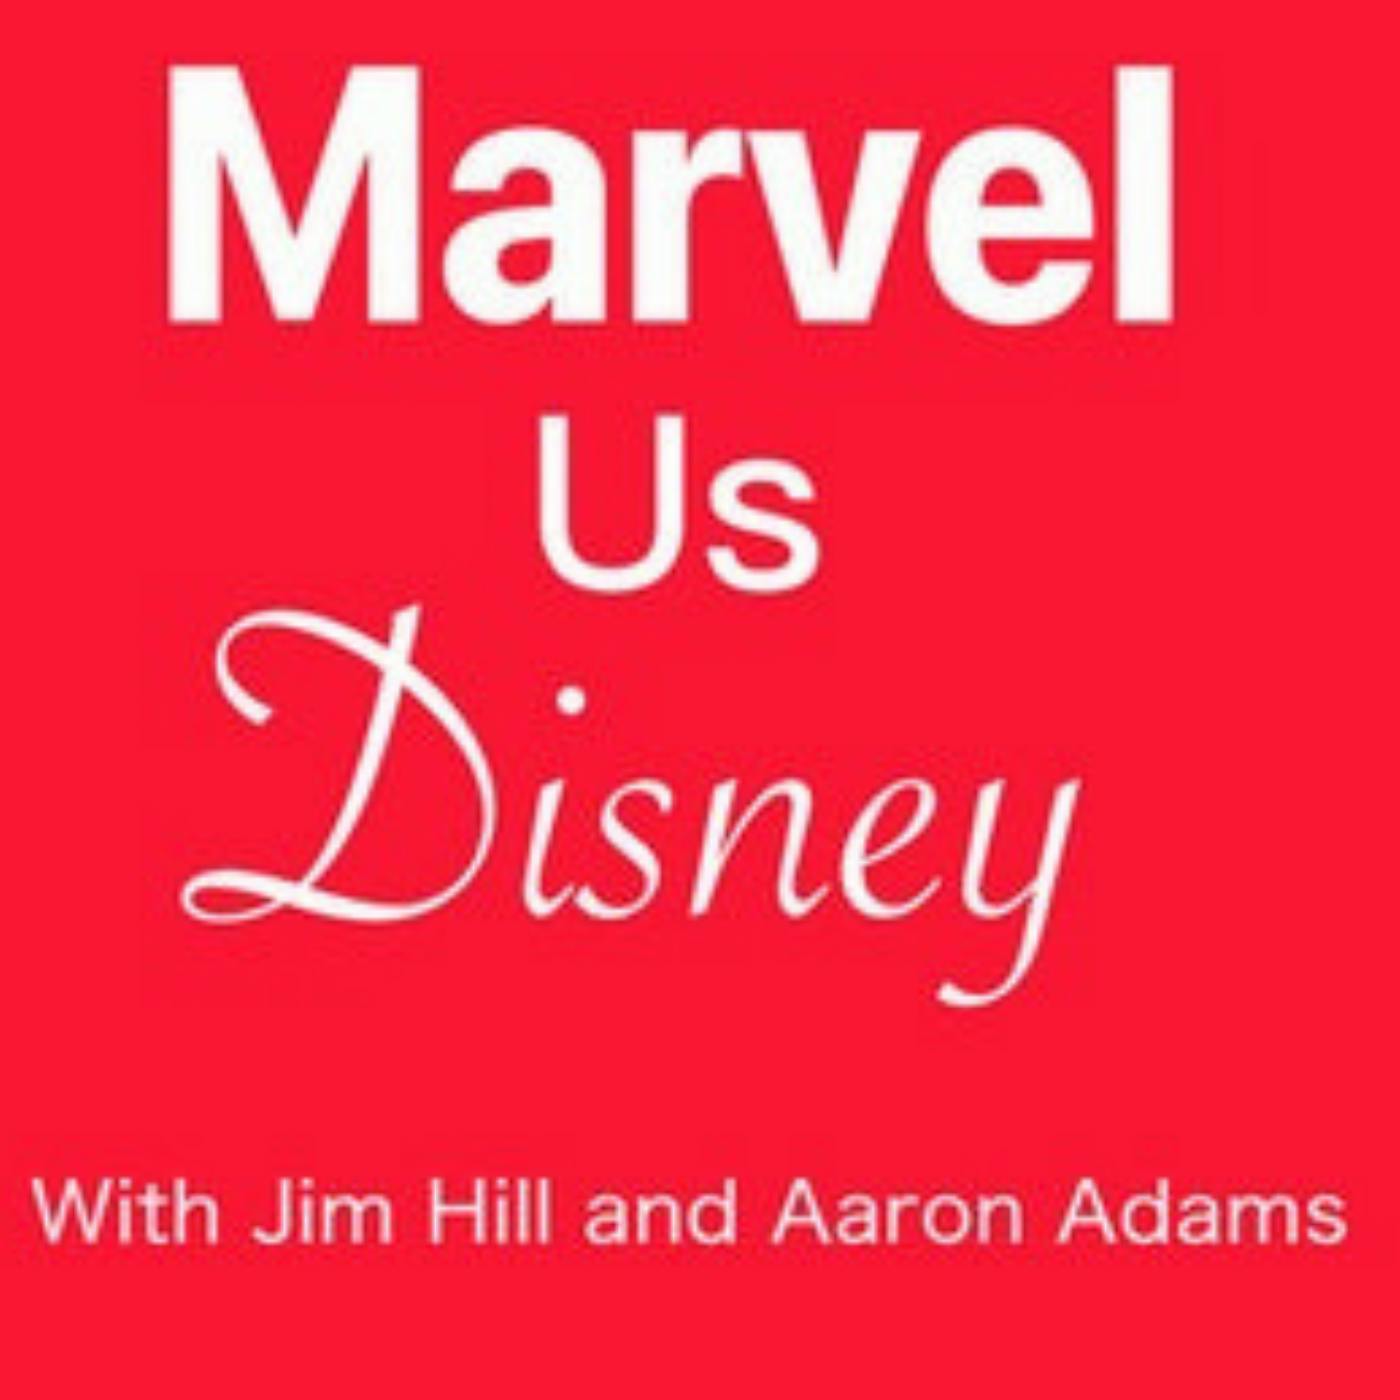 Marvel Us Disney Episode 137: “Ms. Marvel” is off to a marvelous start Image